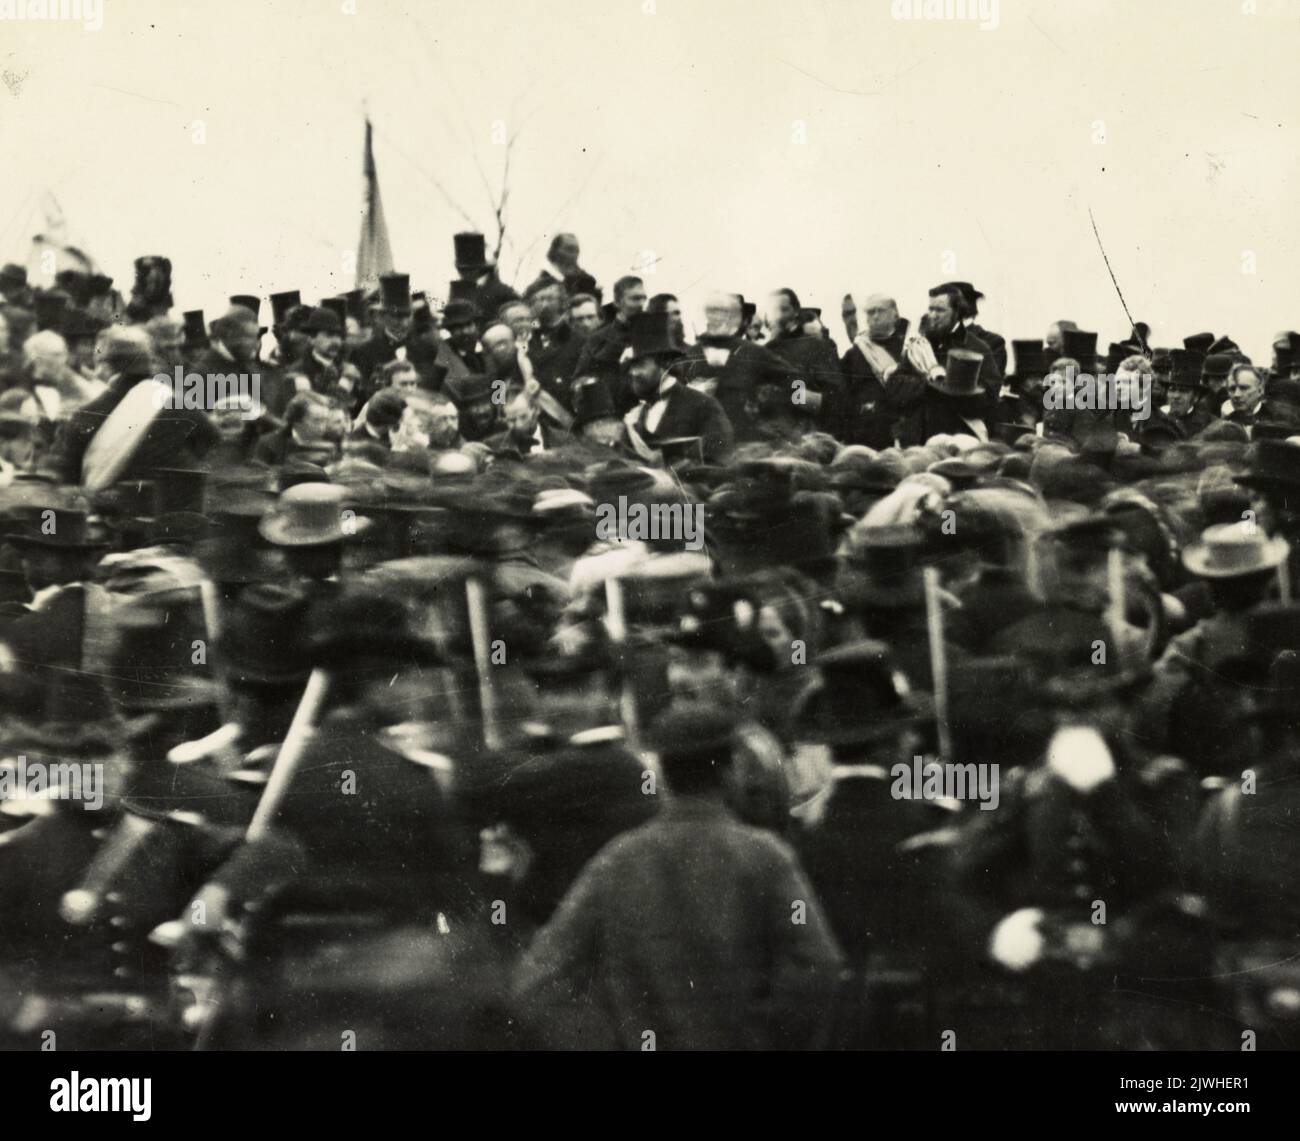 Präsident Abraham Lincoln am 19. November 1863 in Gettysburg. Etwa drei Stunden später hielt er die Gettysburg-Rede, eine der bekanntesten Reden der amerikanischen Geschichte. Siehe Bild 2JWHER0 für das gleiche Bild mit Lincoln, das durch ein rotes Quadrat gekennzeichnet ist. Stockfoto